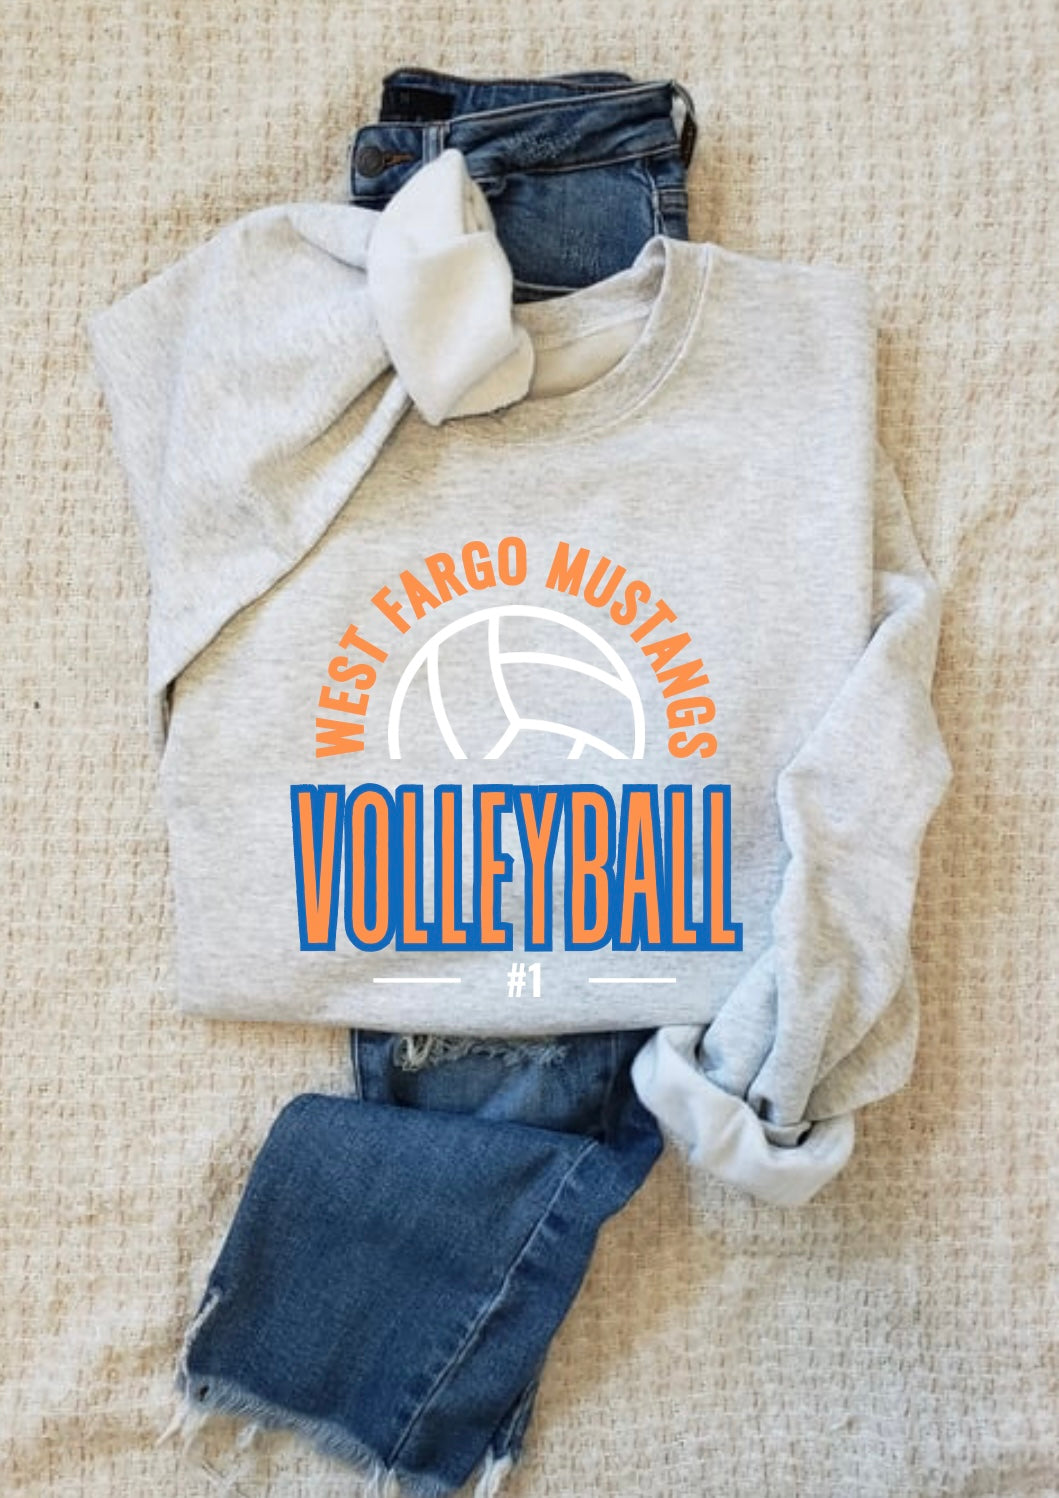 Volleyball Crew Arch Sweatshirt